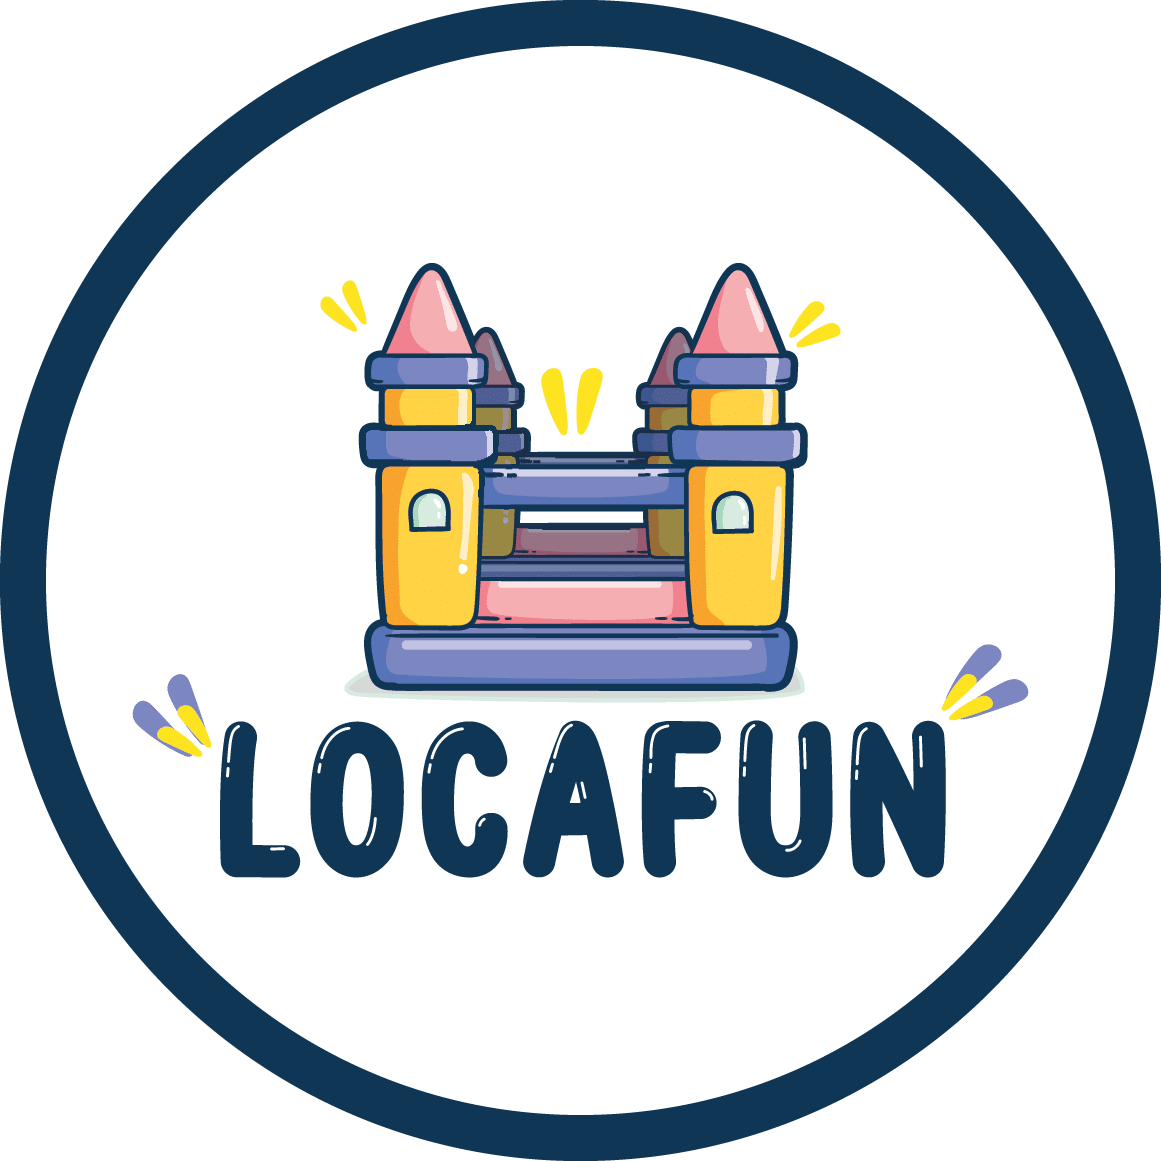 Locafun